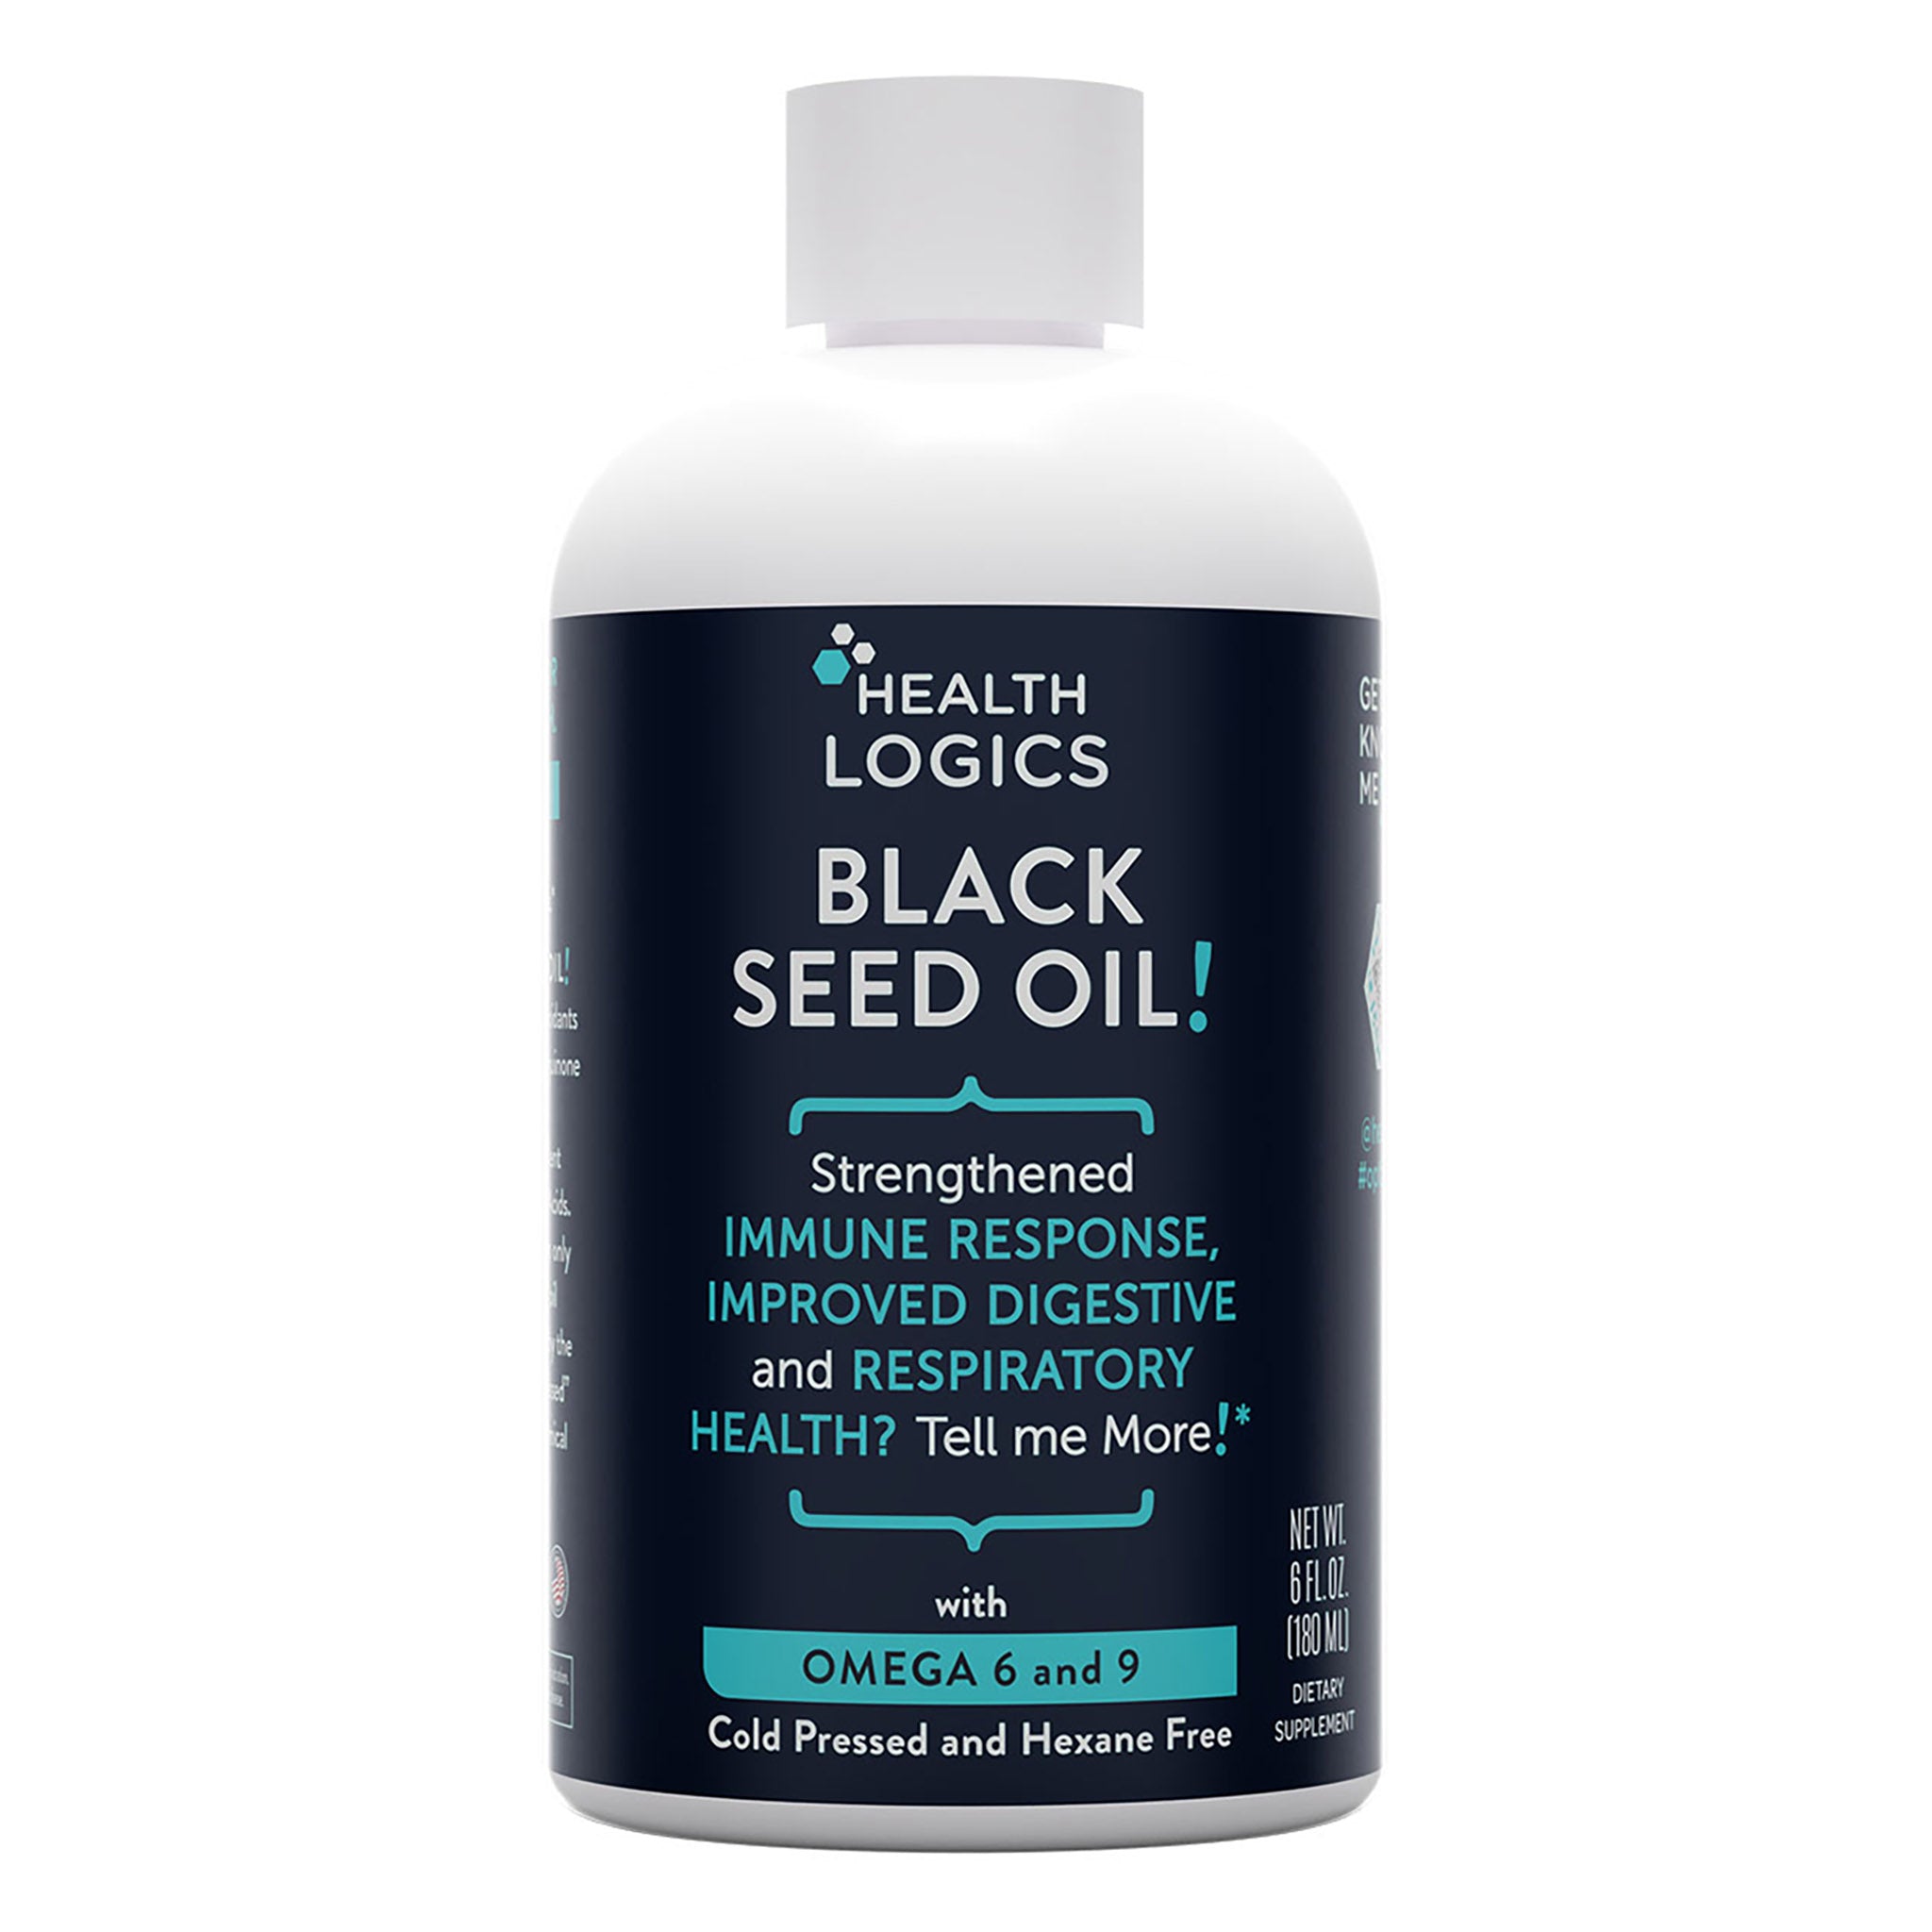 Black Seed Oil! 180 ml